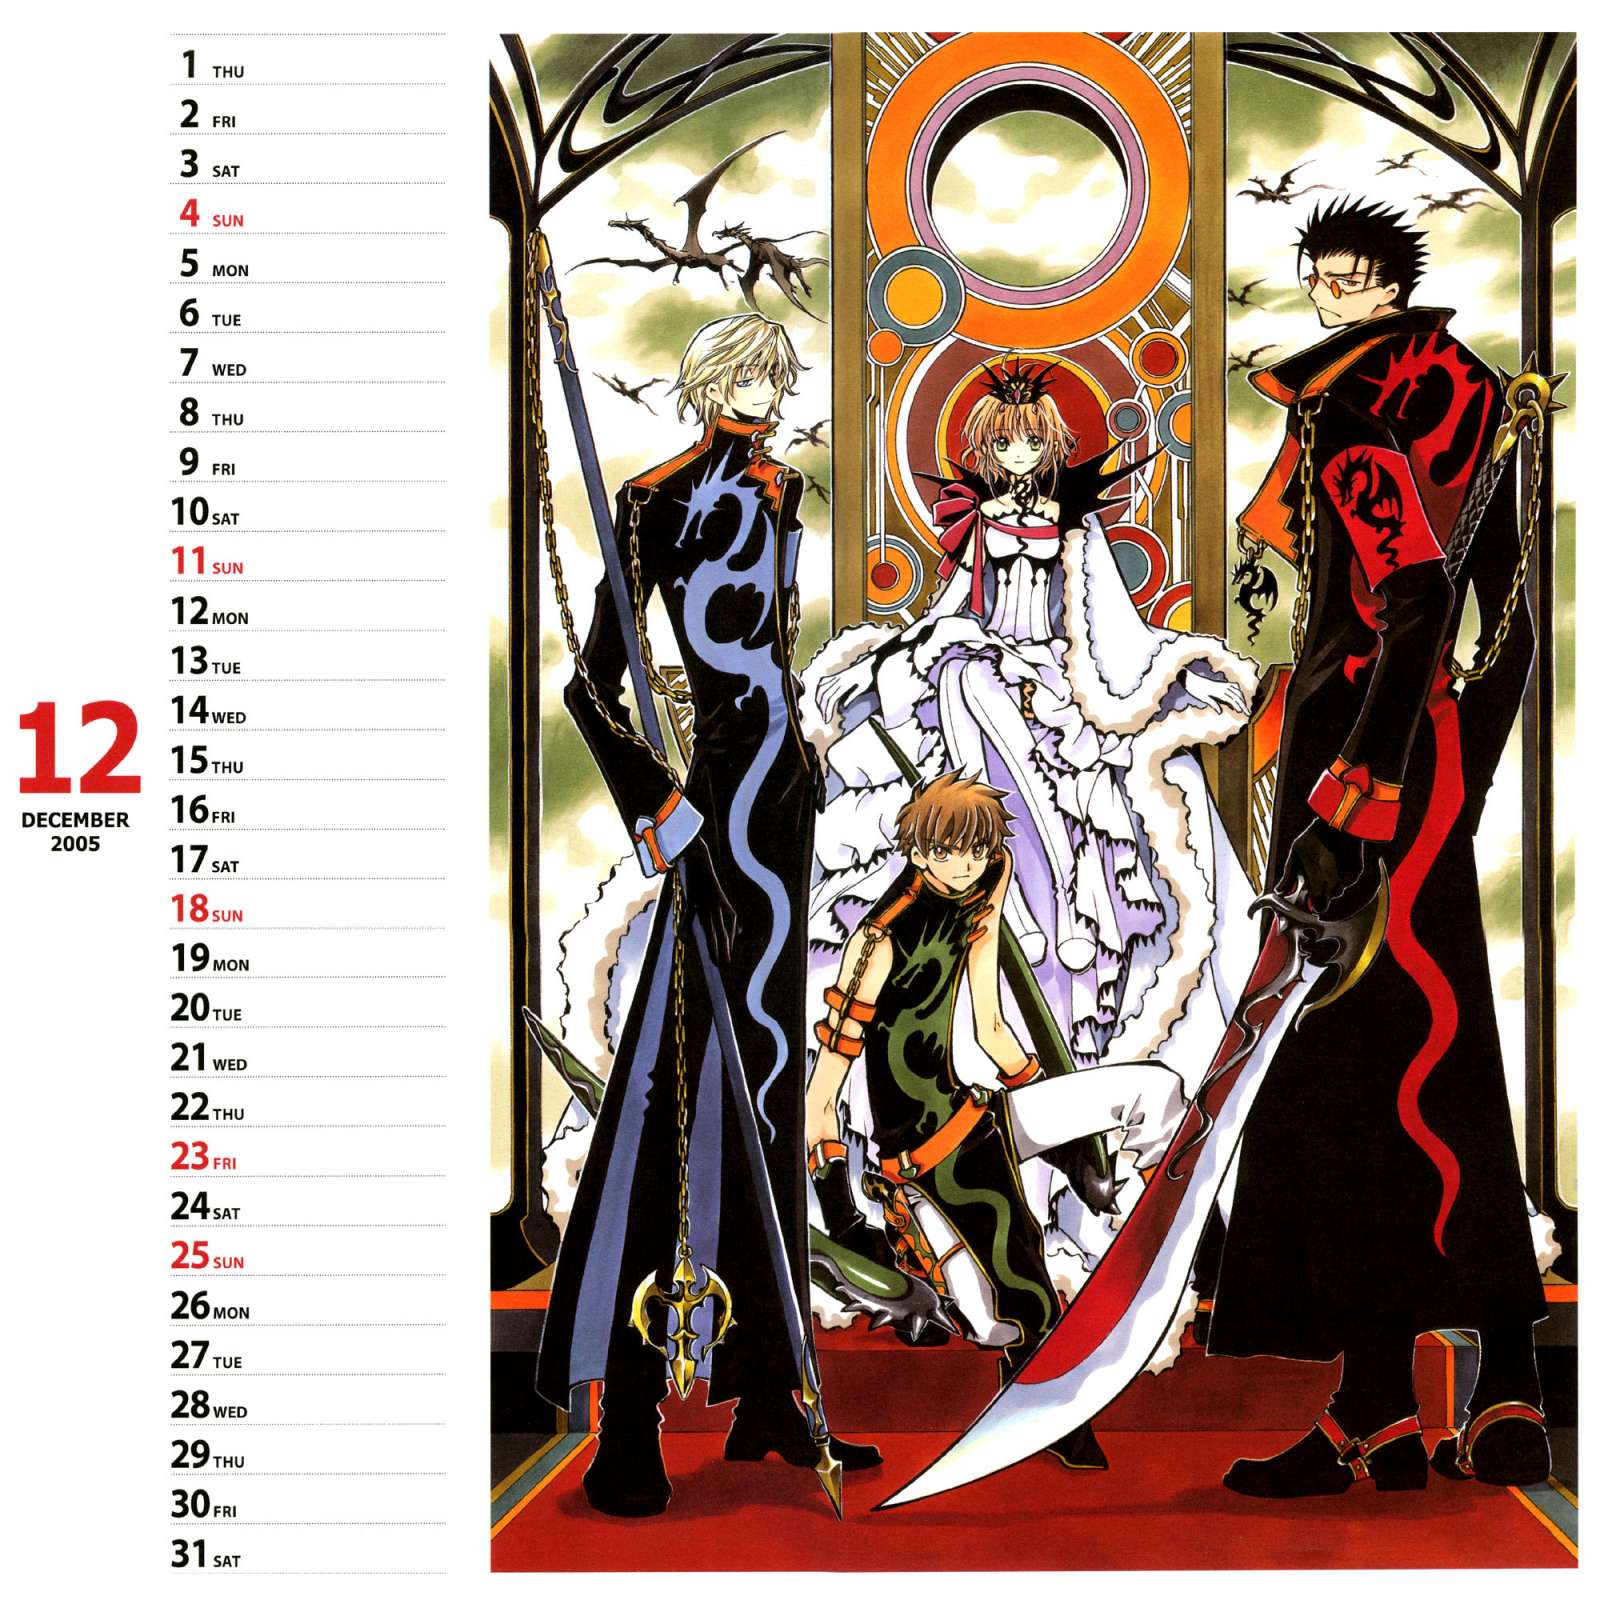 Calendario de CLAMP 2006 - Tsubasa Reservoir Chronicle - XXX Holic 2005 en Mxima Calidad